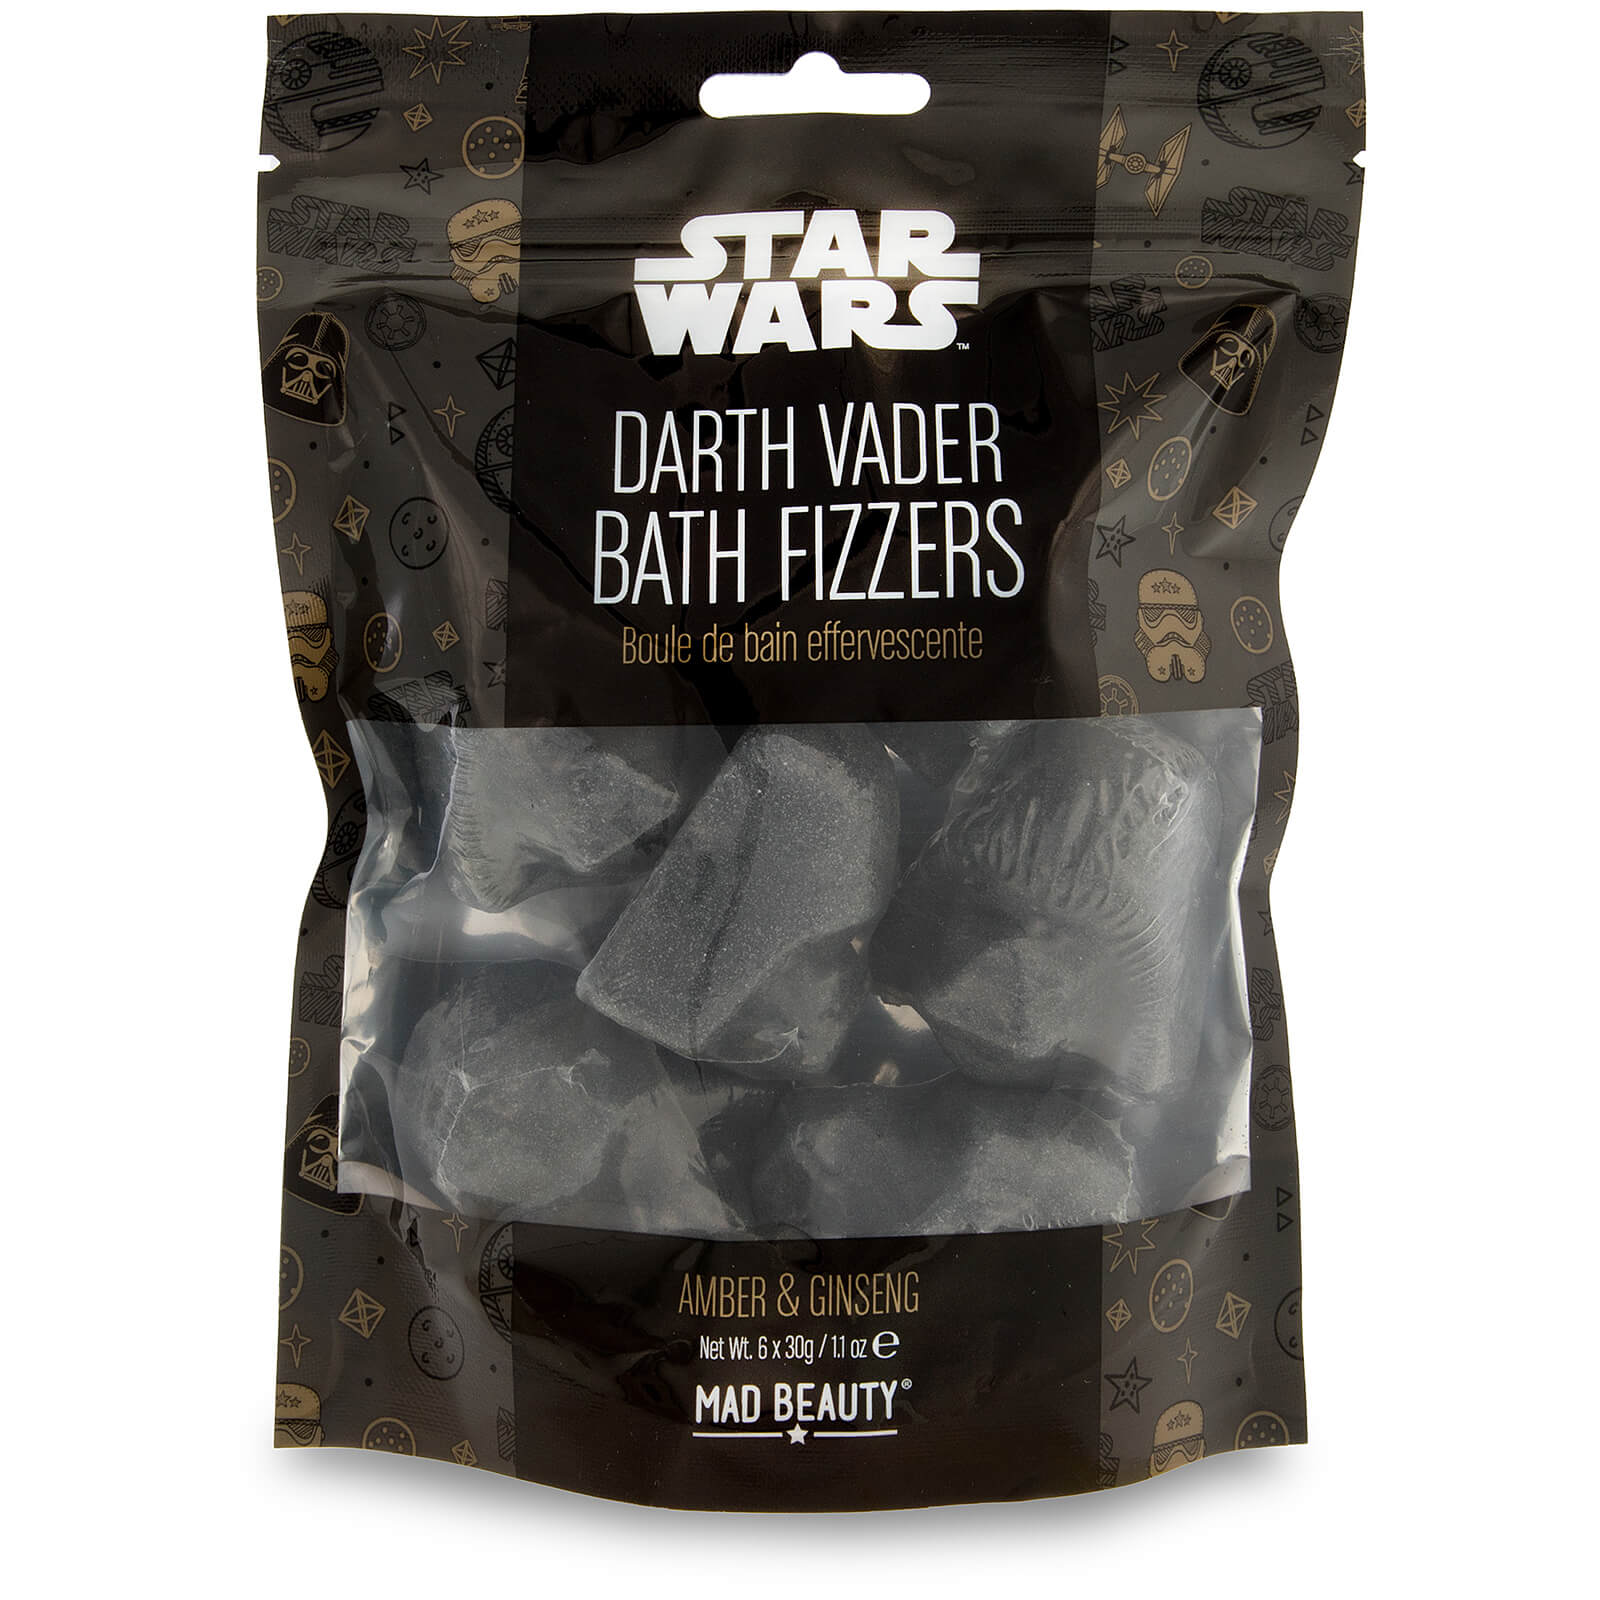 Star Wars - Darth Vader Bath Fizzers